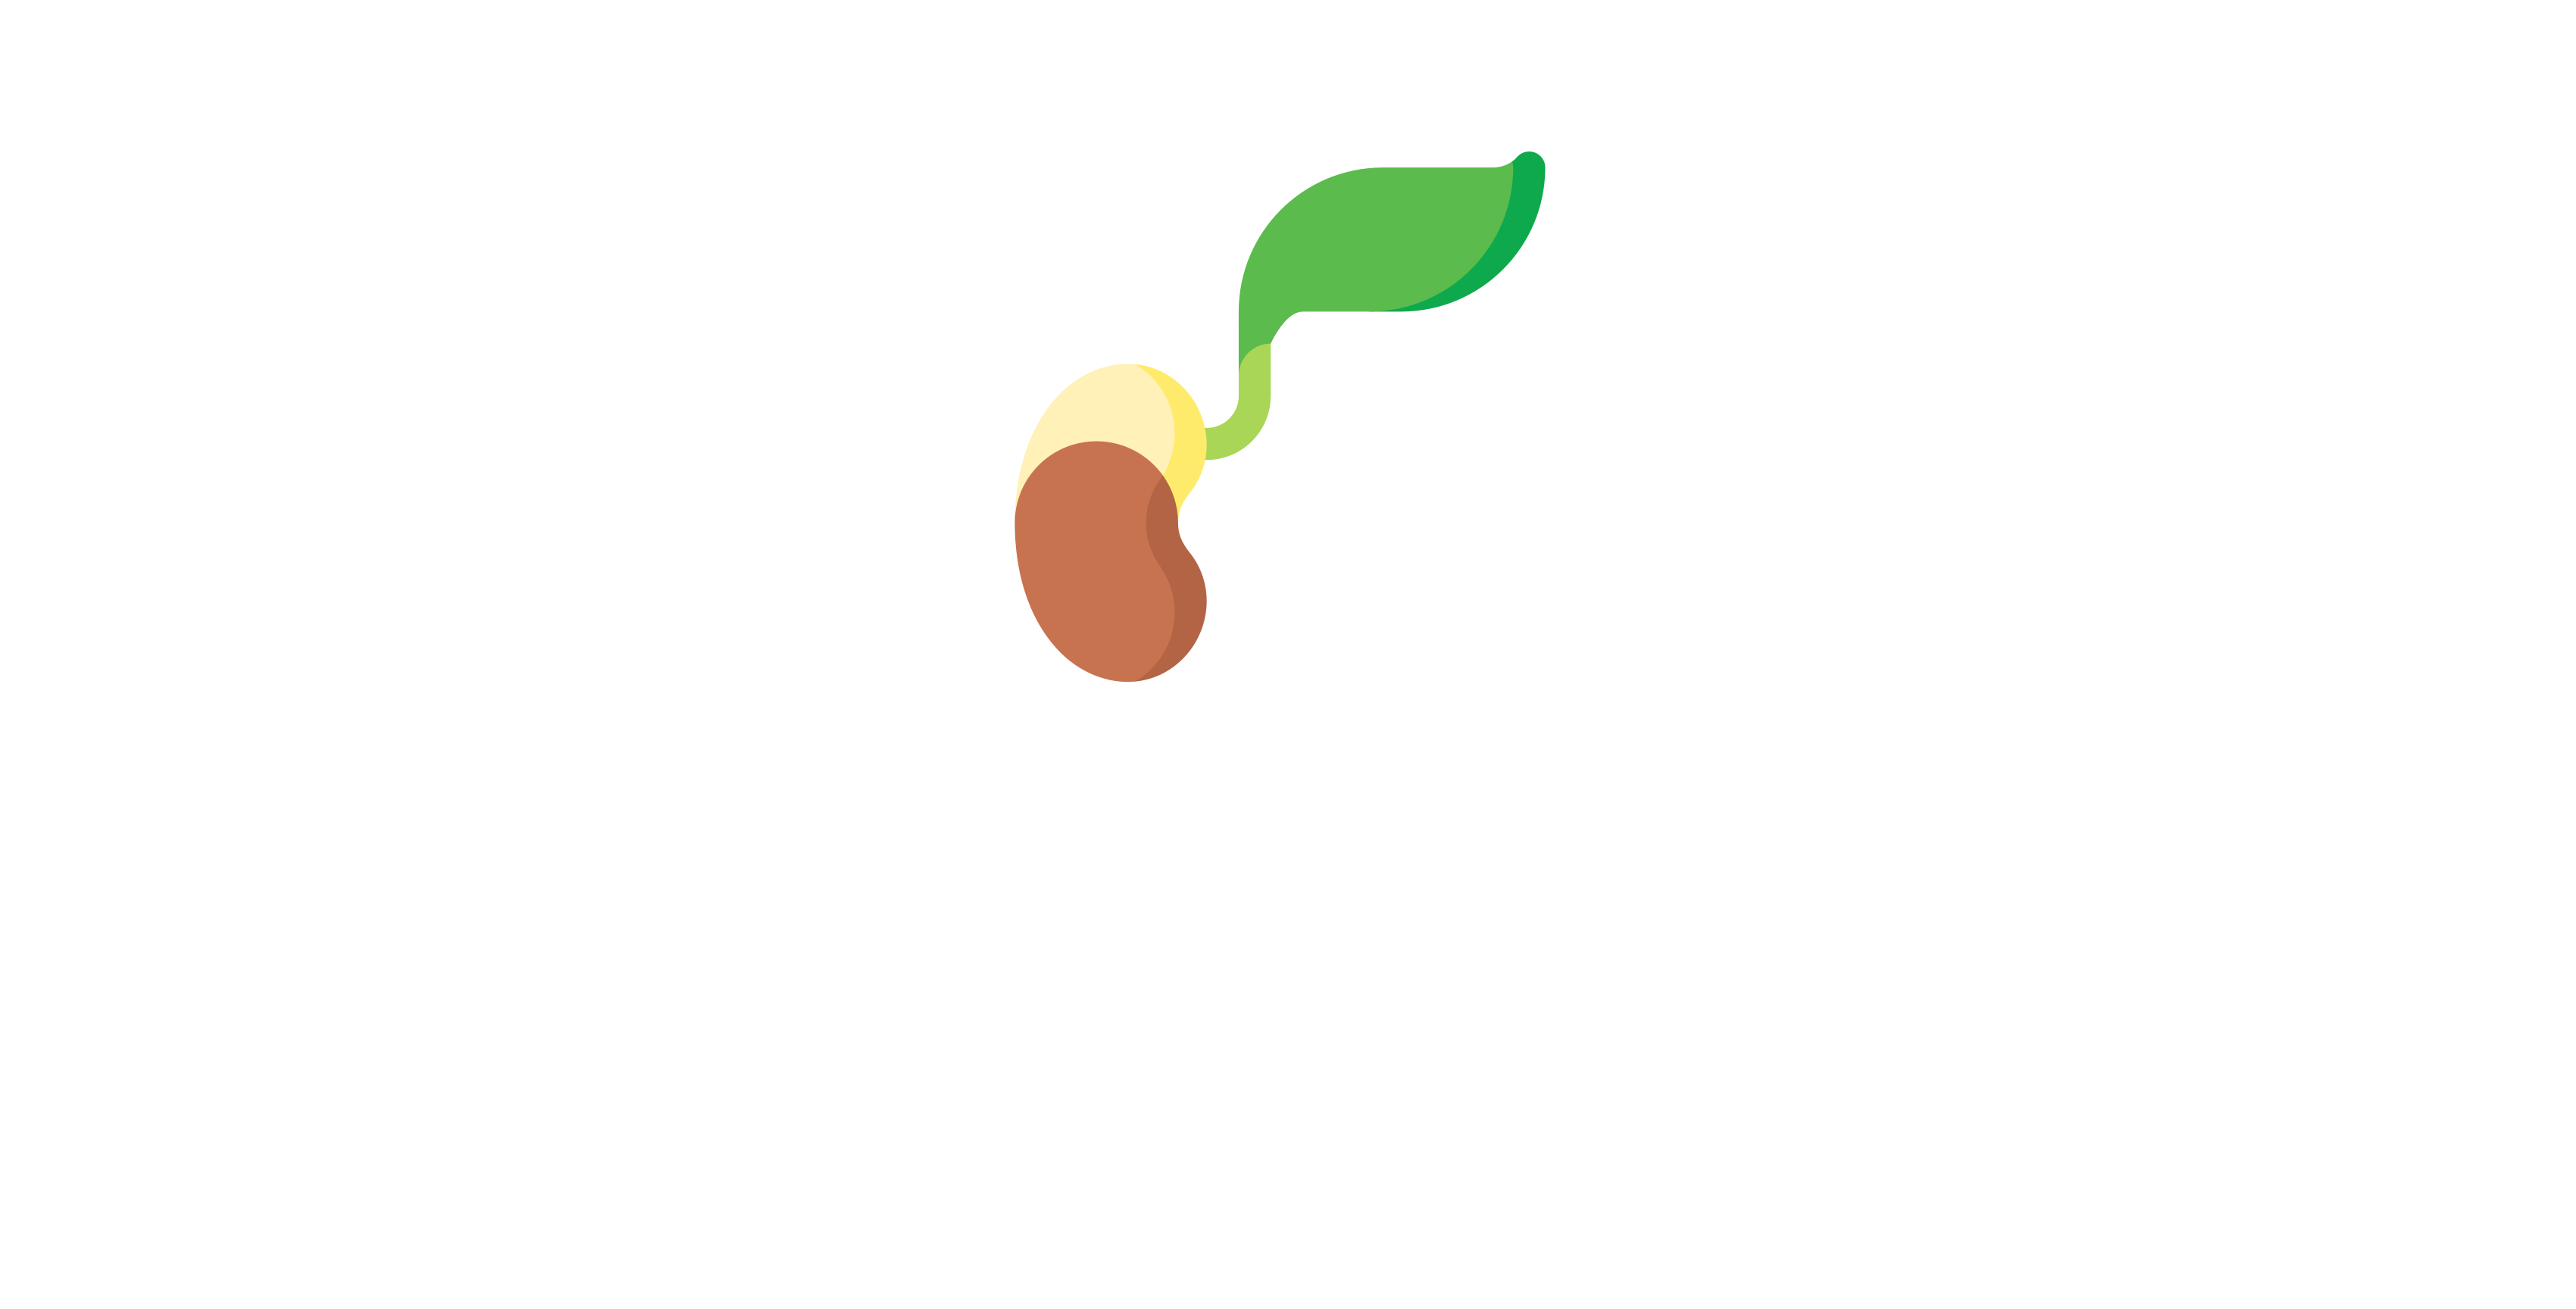 Centro Educativo La Semilla